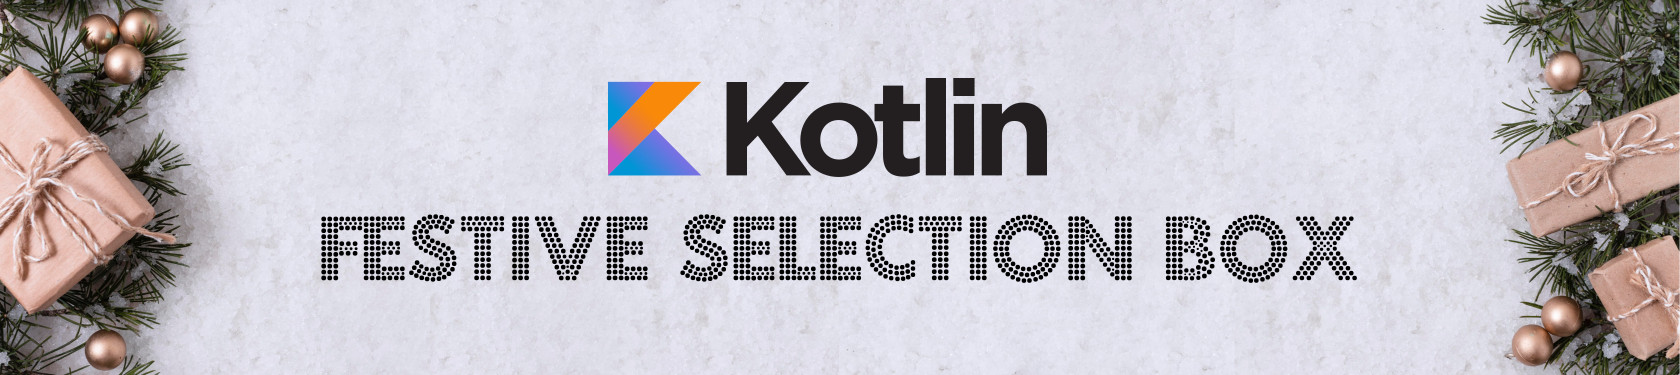 Kotlin Festive Selection Box